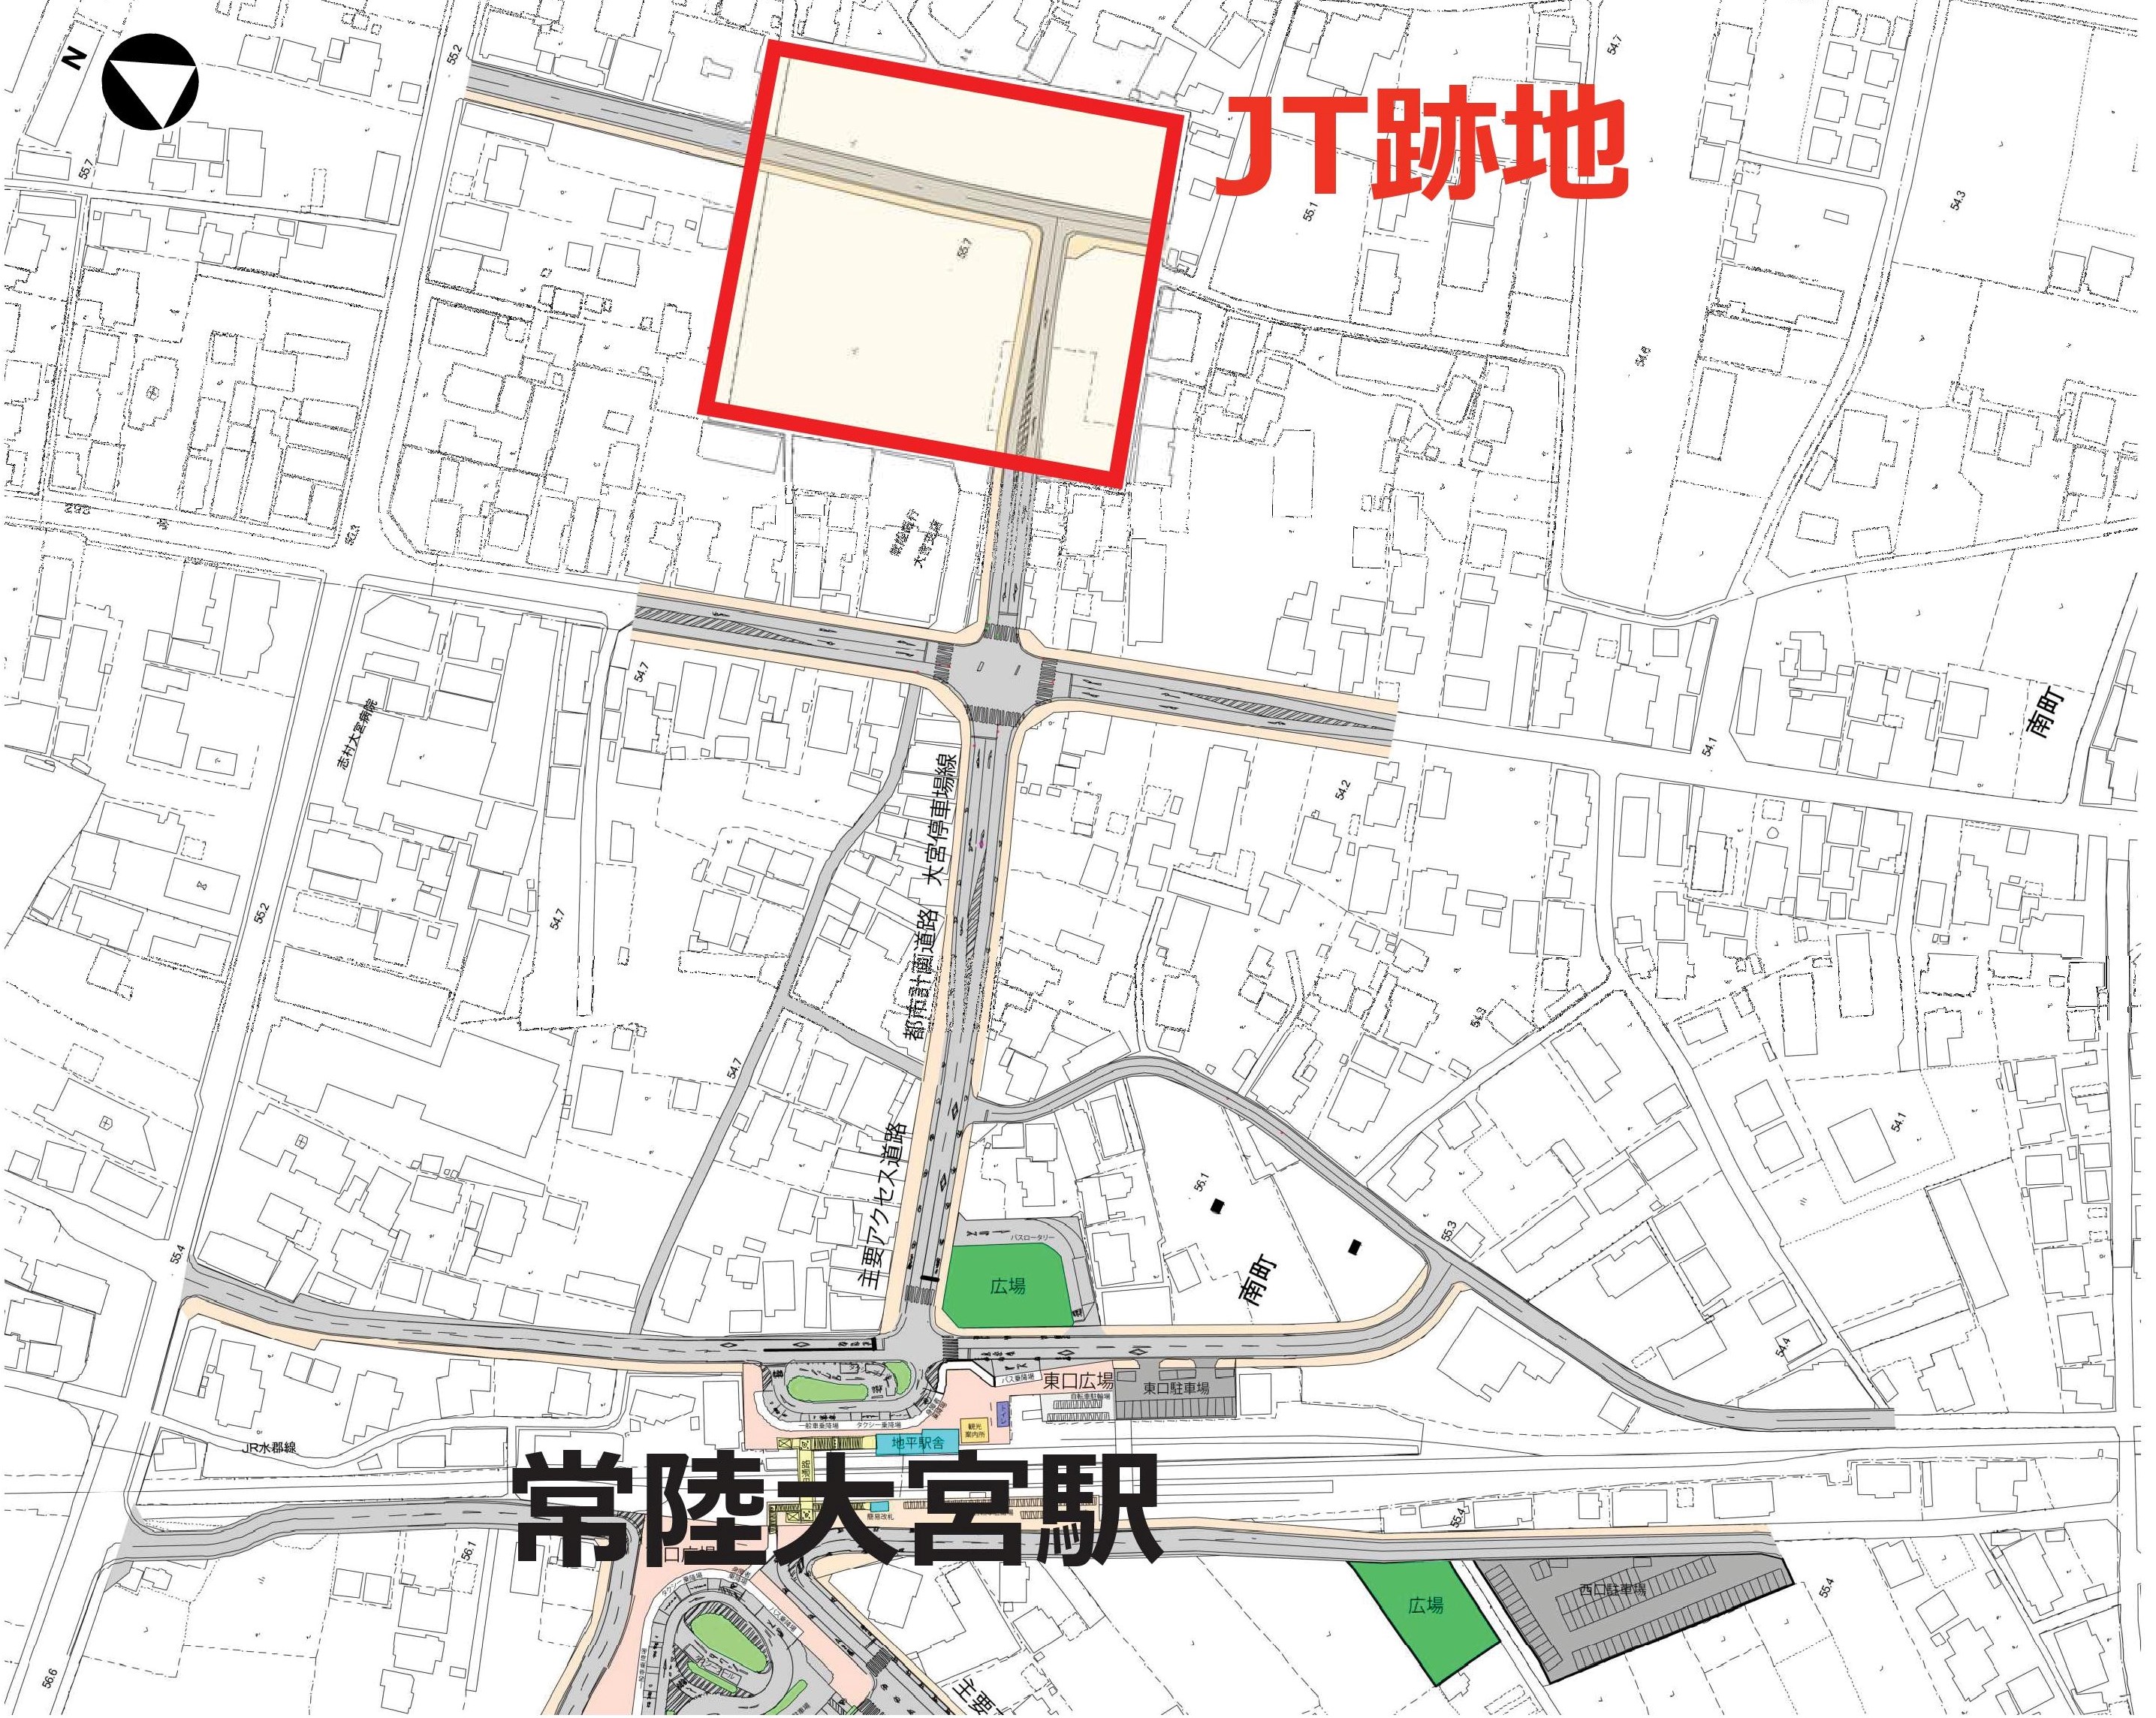 JT跡地計画図